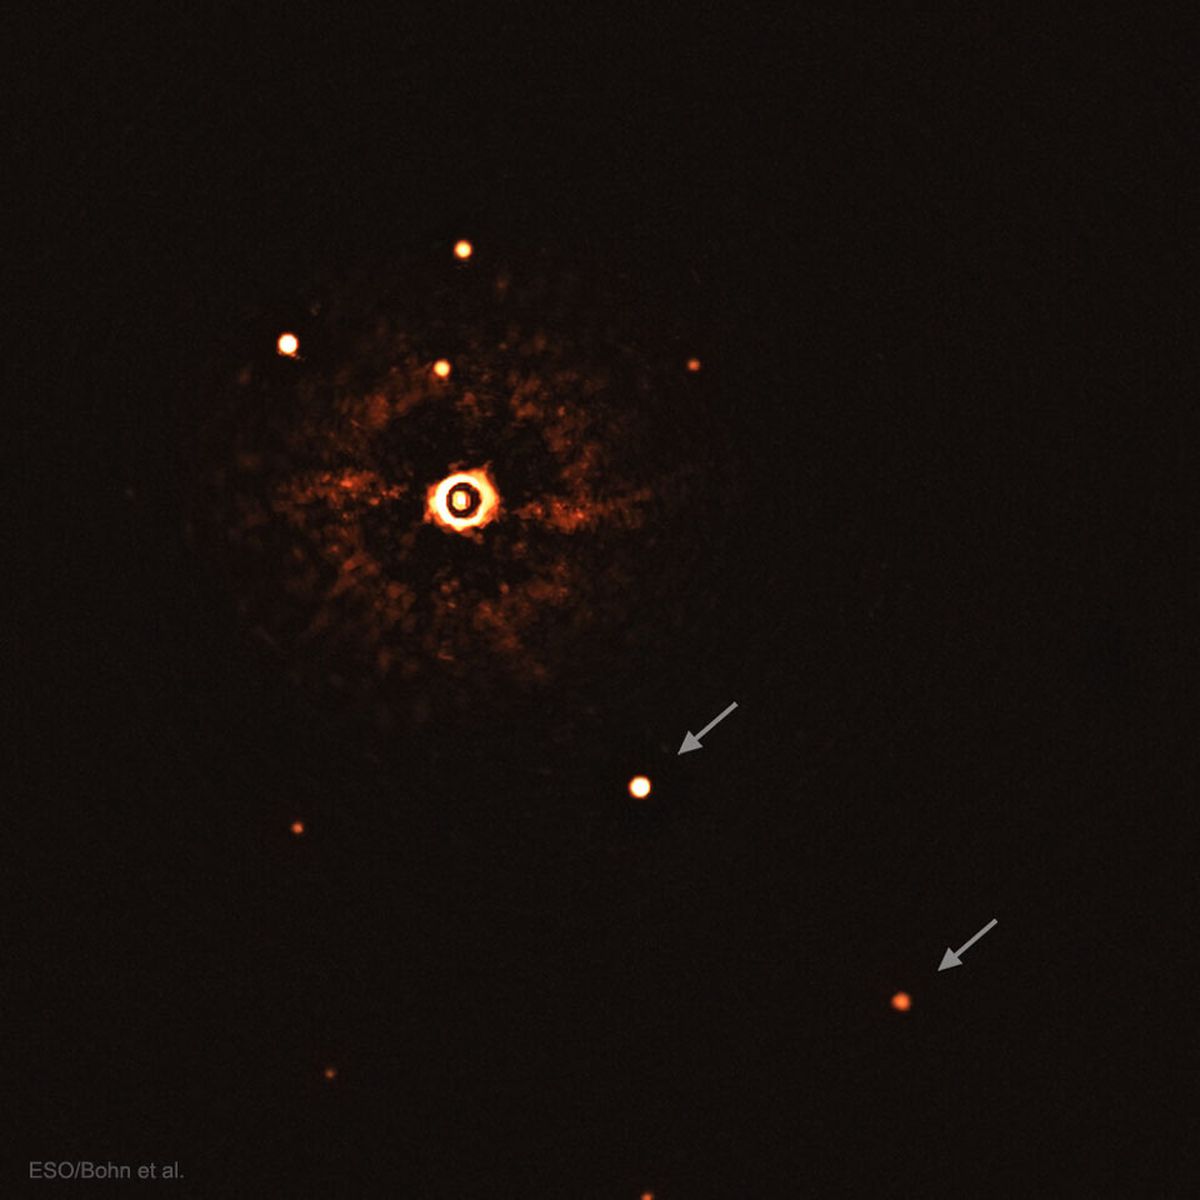 TYC 8998-760-1: Güneş Benzeri Bir Yıldızın Etrafında Dönen Gezegenler